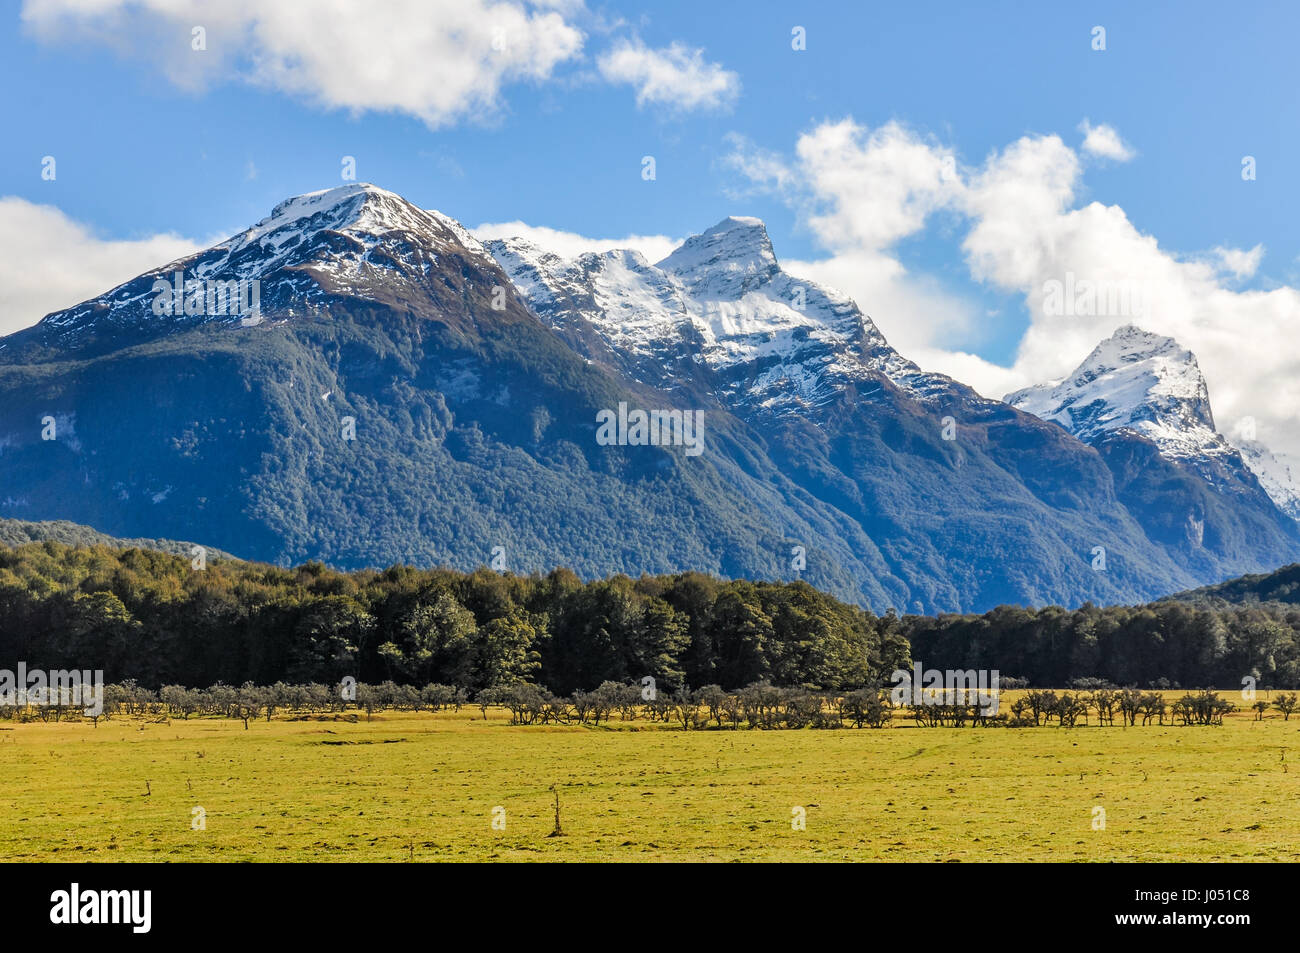 Paisaje alpino en el Señor de los anillos película ubicación, Glenorchy, Nueva Zelanda Foto de stock